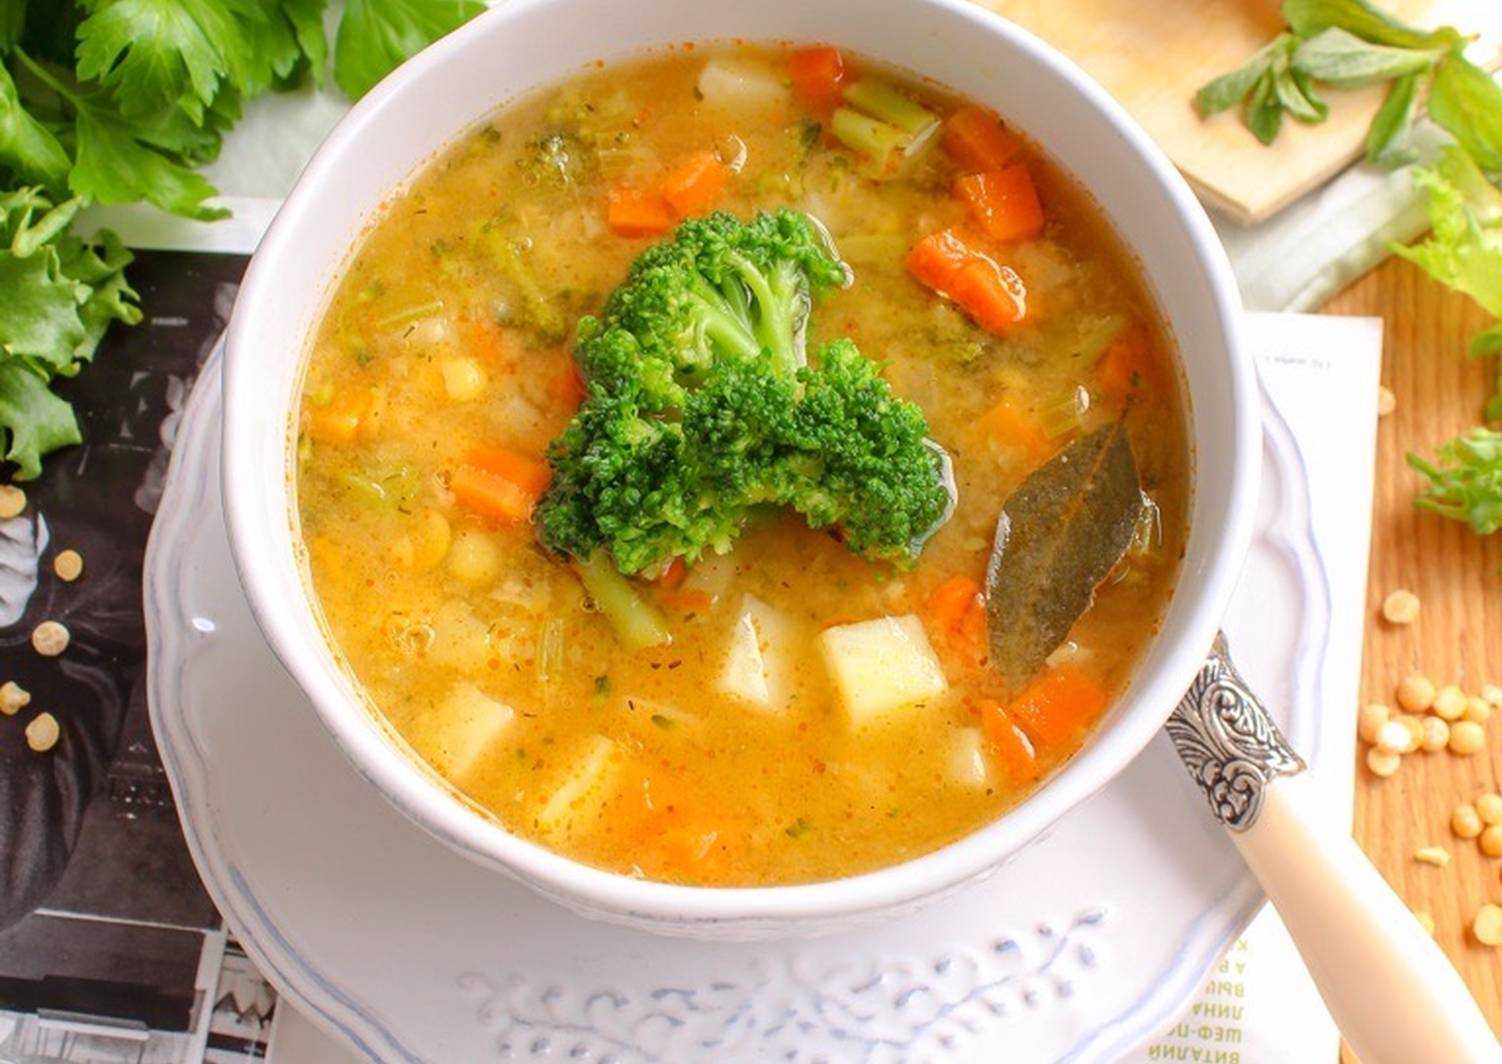 Как приготовить гороховый суп: топ 10 самых вкусных рецепта